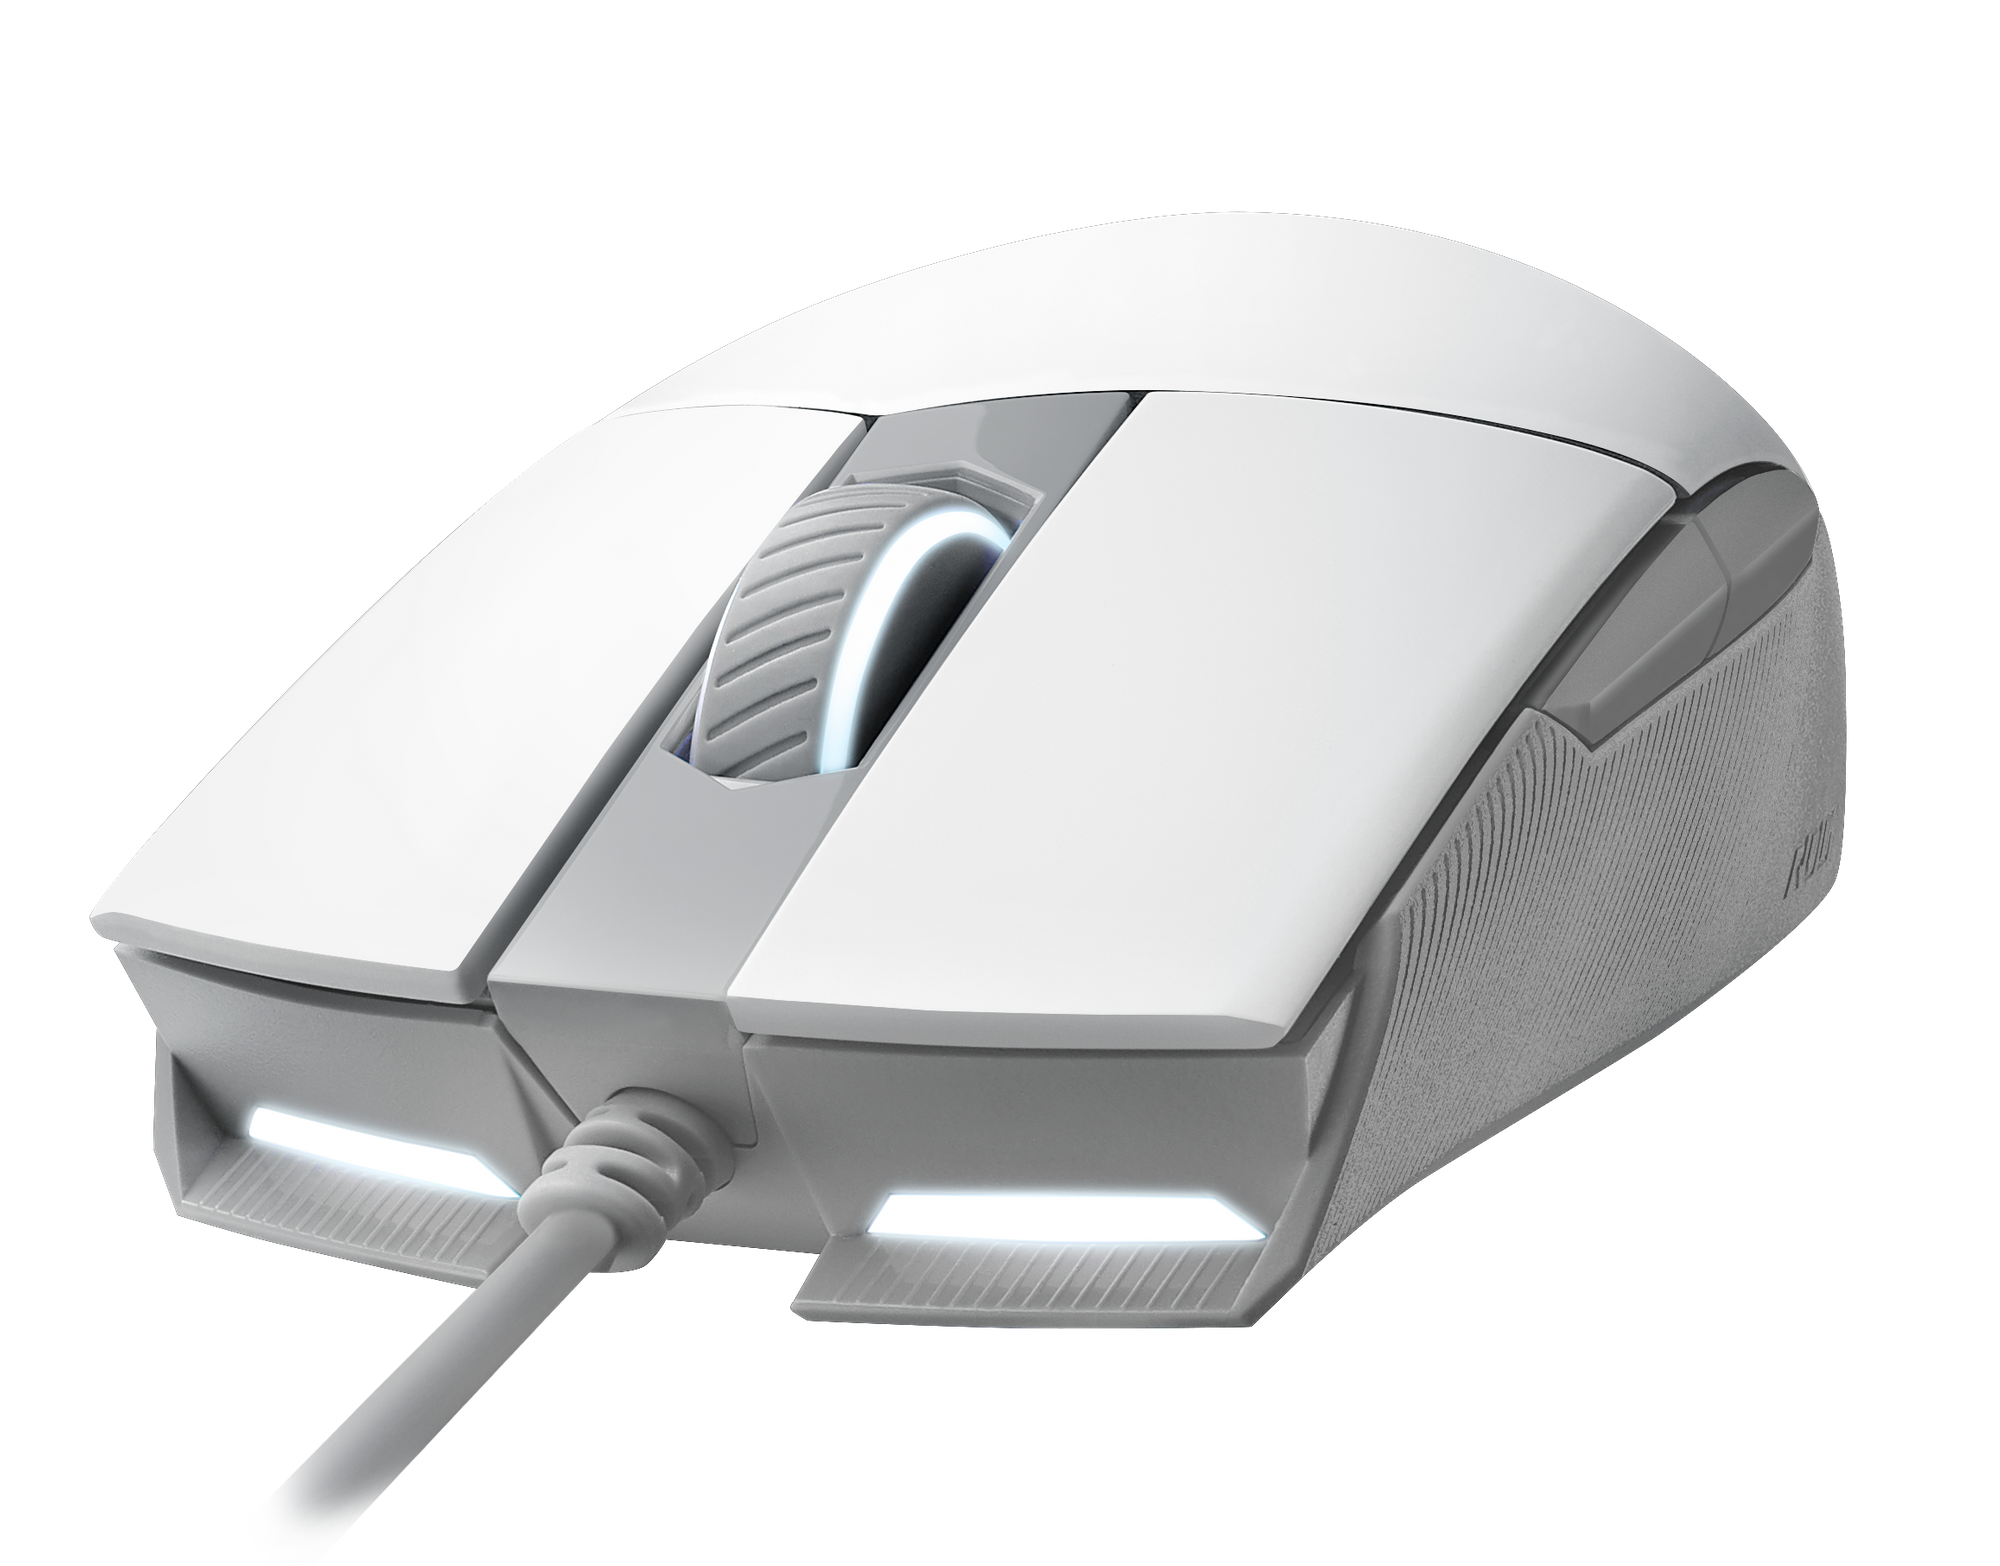 ASUS ROG STRIX Impact II Moonlight White ergonomic gaming mouse thumbnail 6